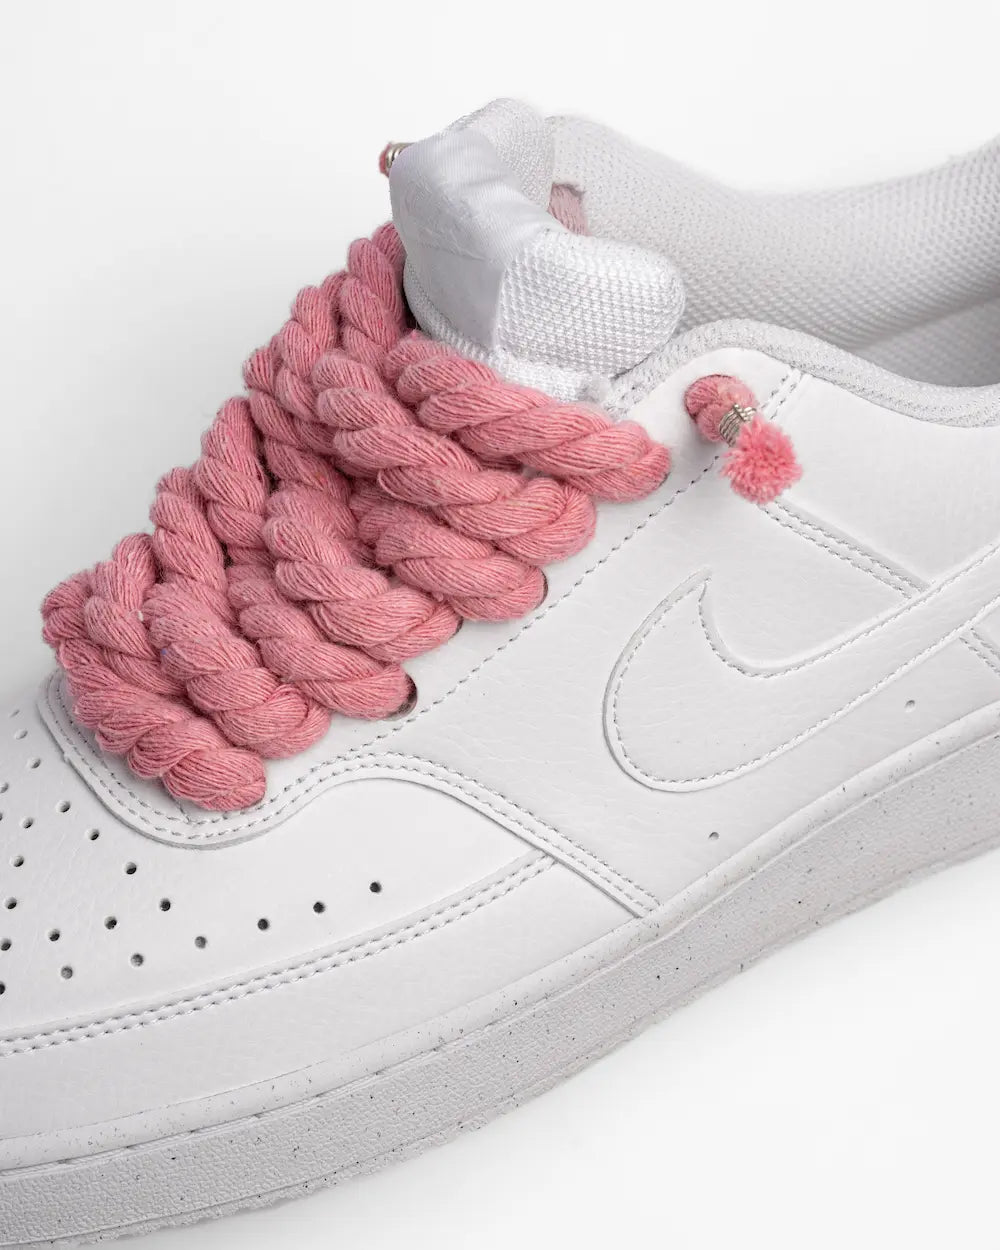 Nike Court Vision personalizzata con lacci in corda rosa pastello